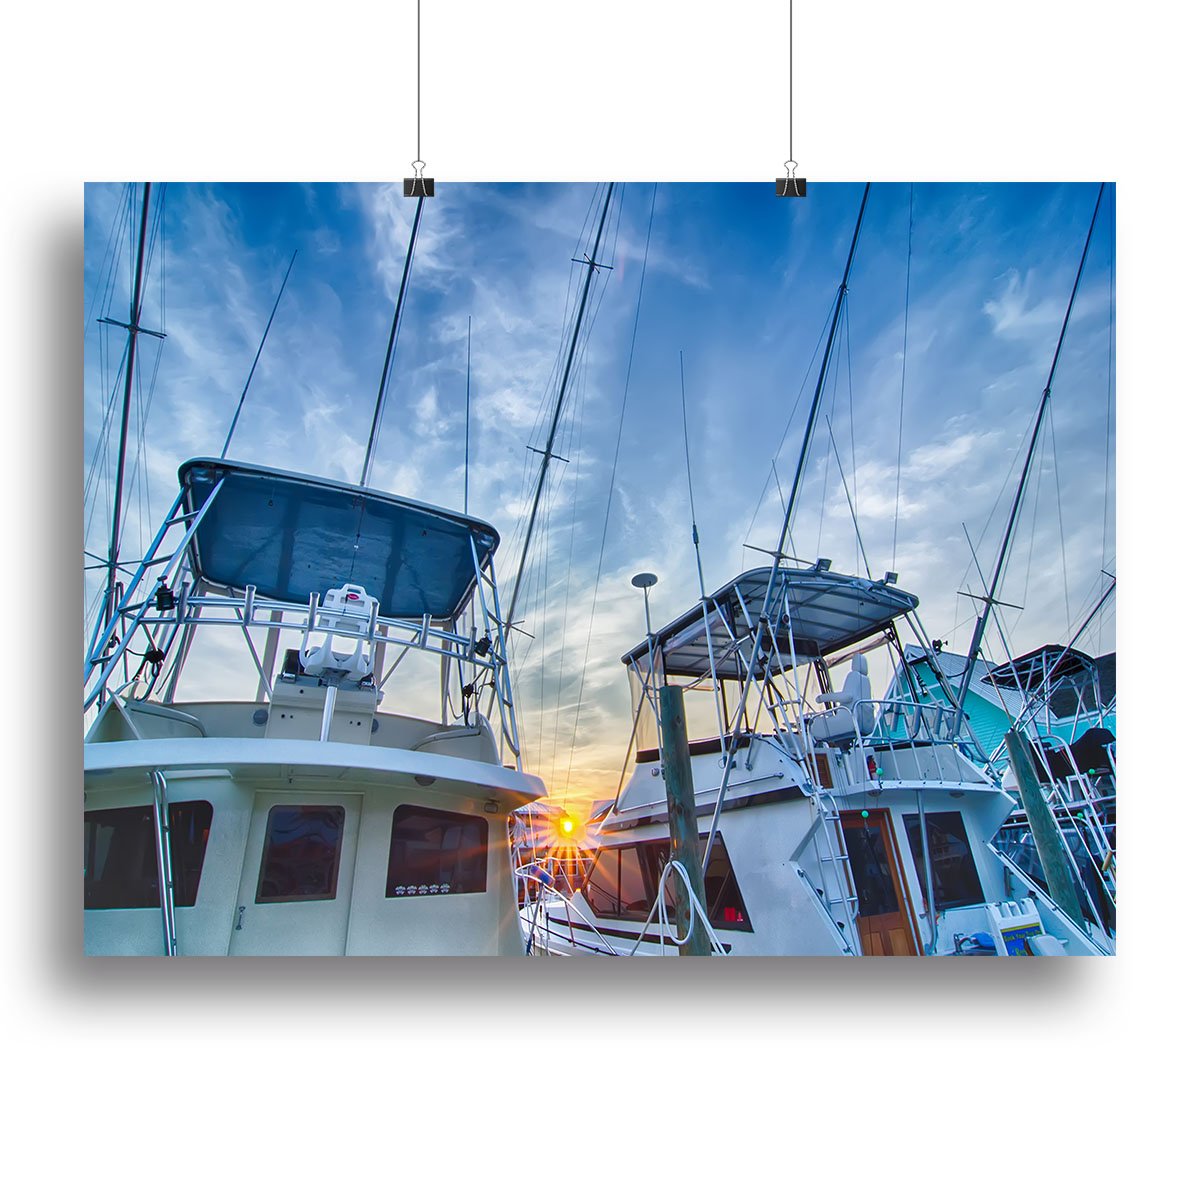 Sportfishing boats at Marina early morning Canvas Print or Poster